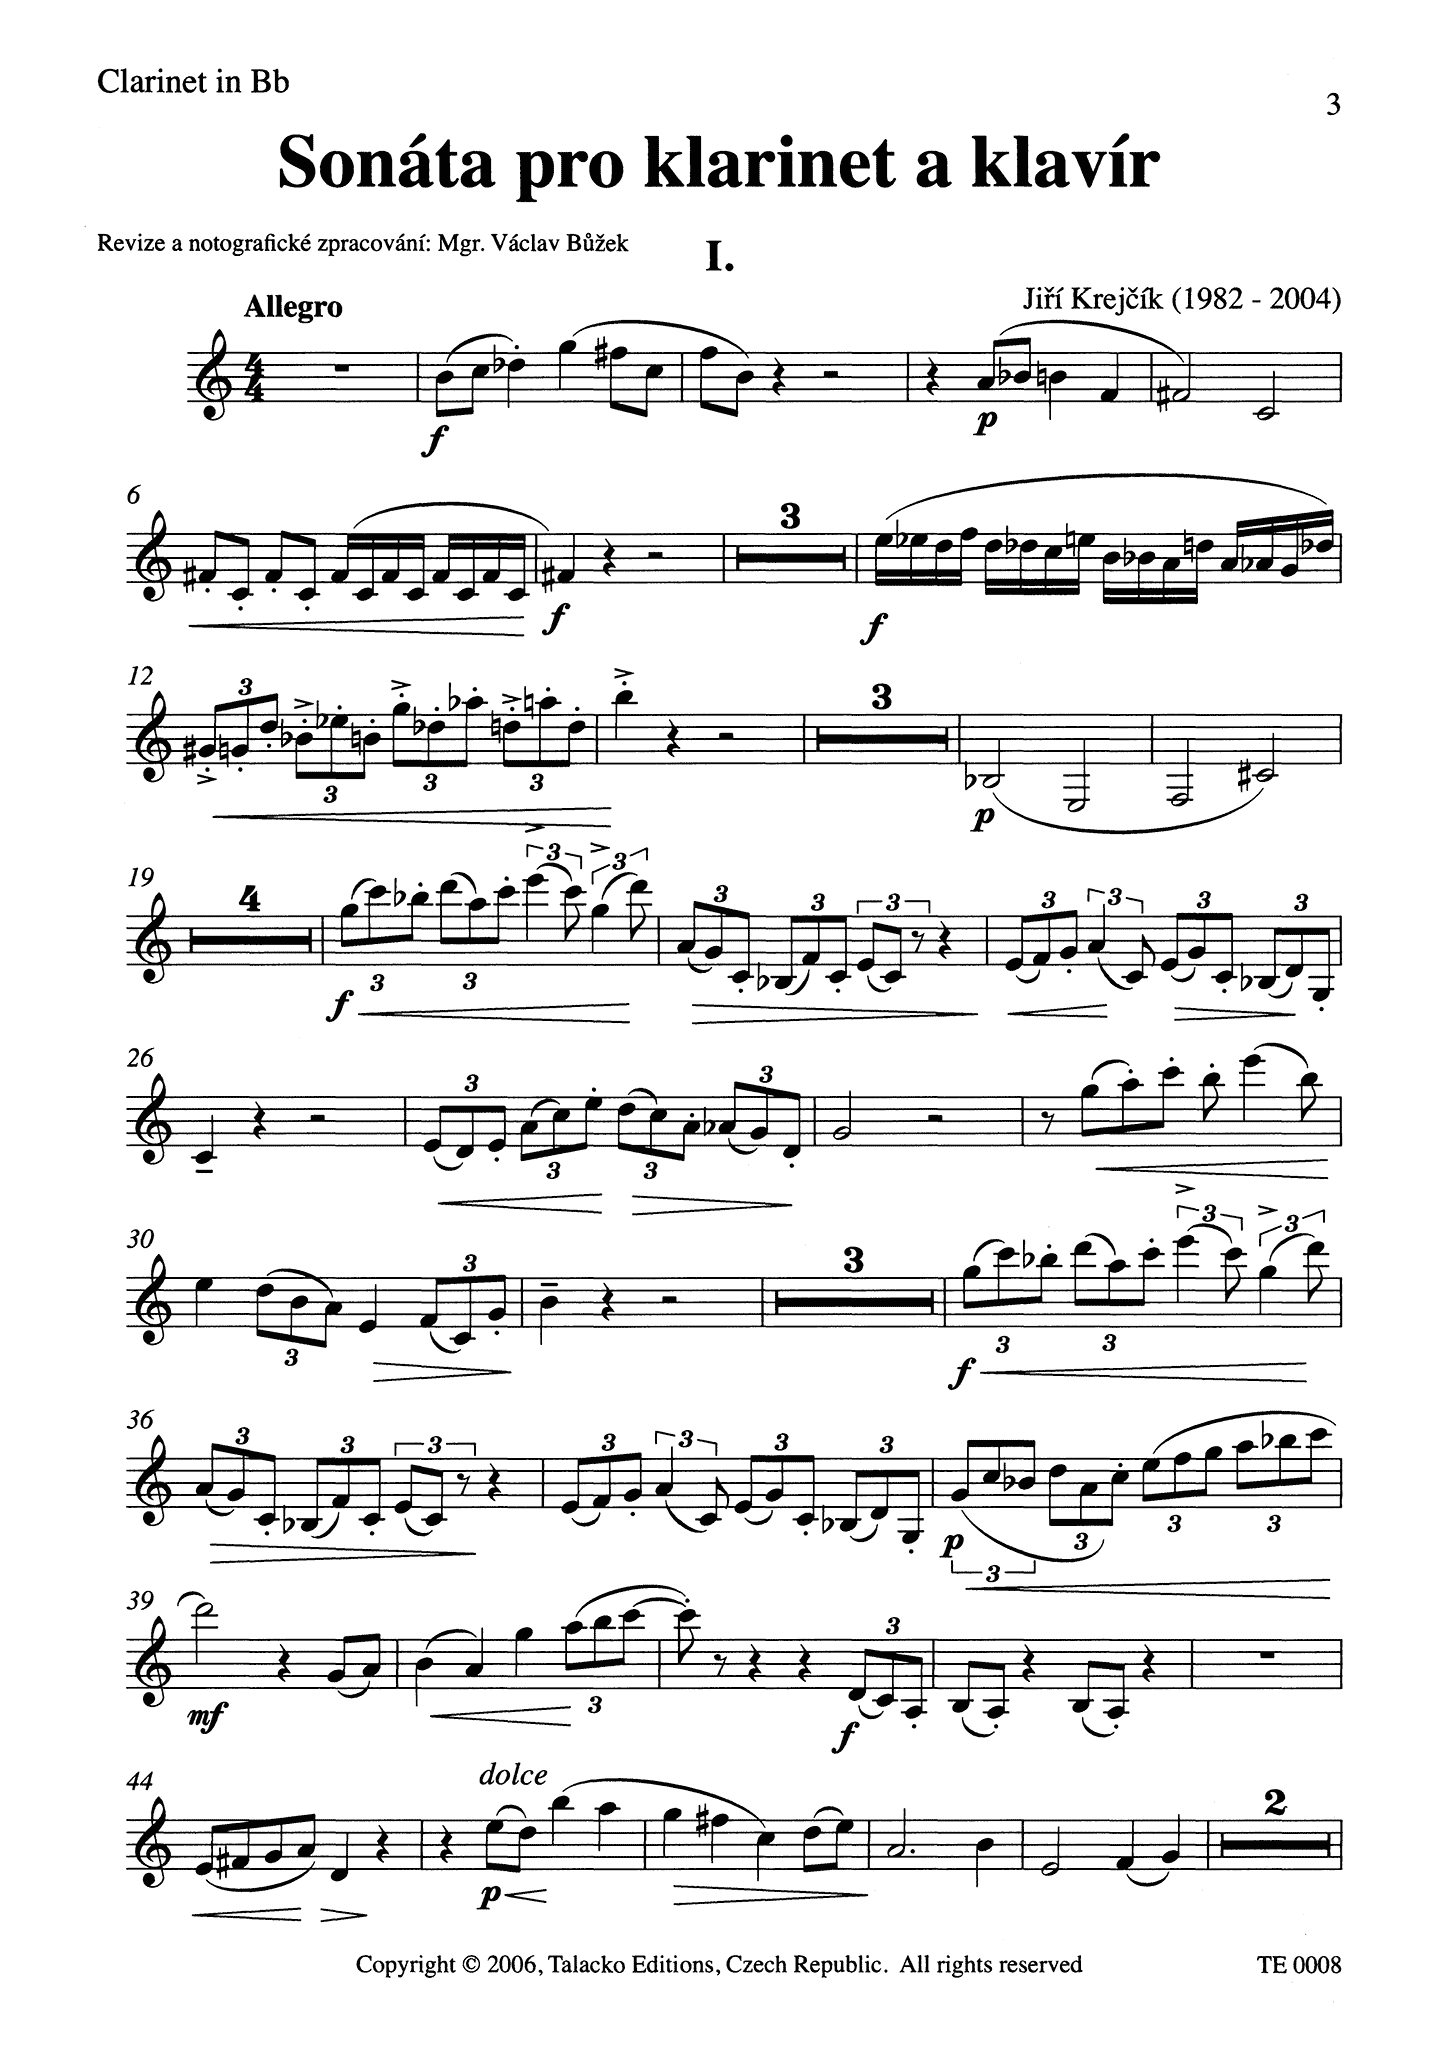 Jiří Krejčík Sonata Clarinet part